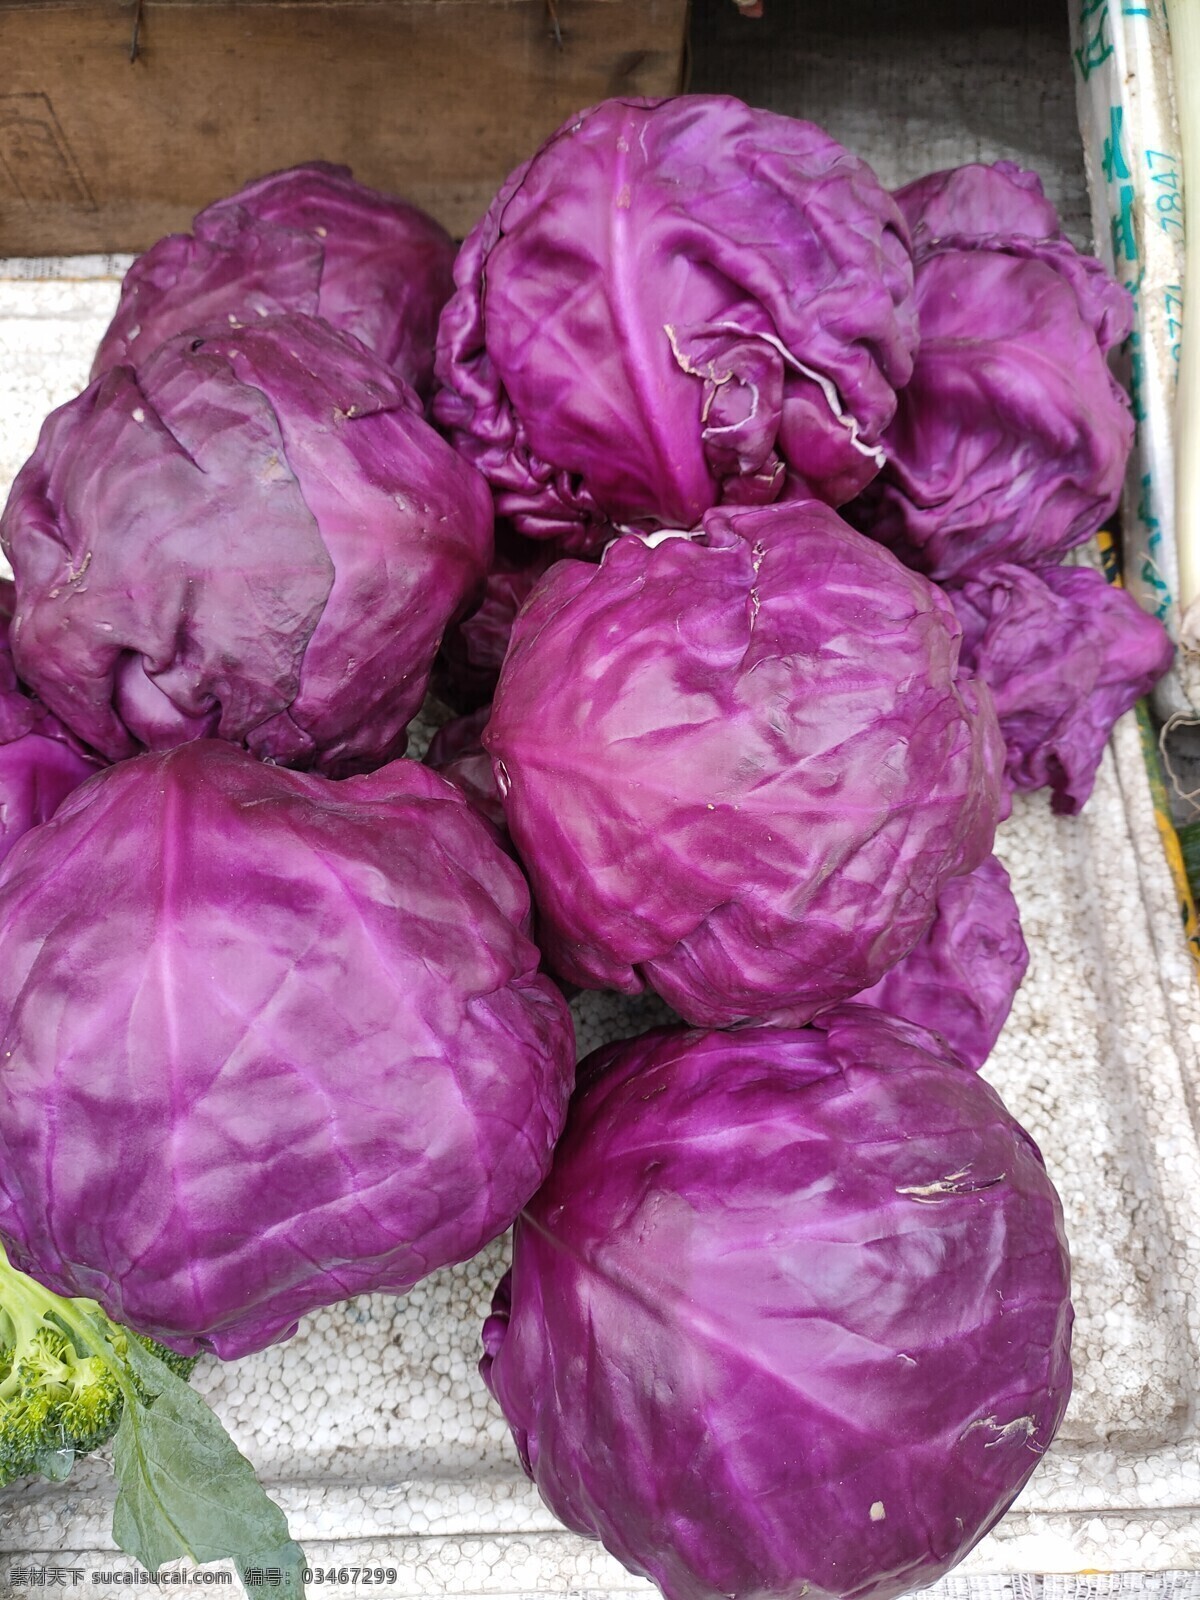 紫甘蓝 蔬菜 新鲜 食品 绿色 农业 青菜 植物 素食 维生素 有机蔬菜 菜叶 瓜 蛋 鸡蛋 菜市场 肉 菜地 菜园 生物世界